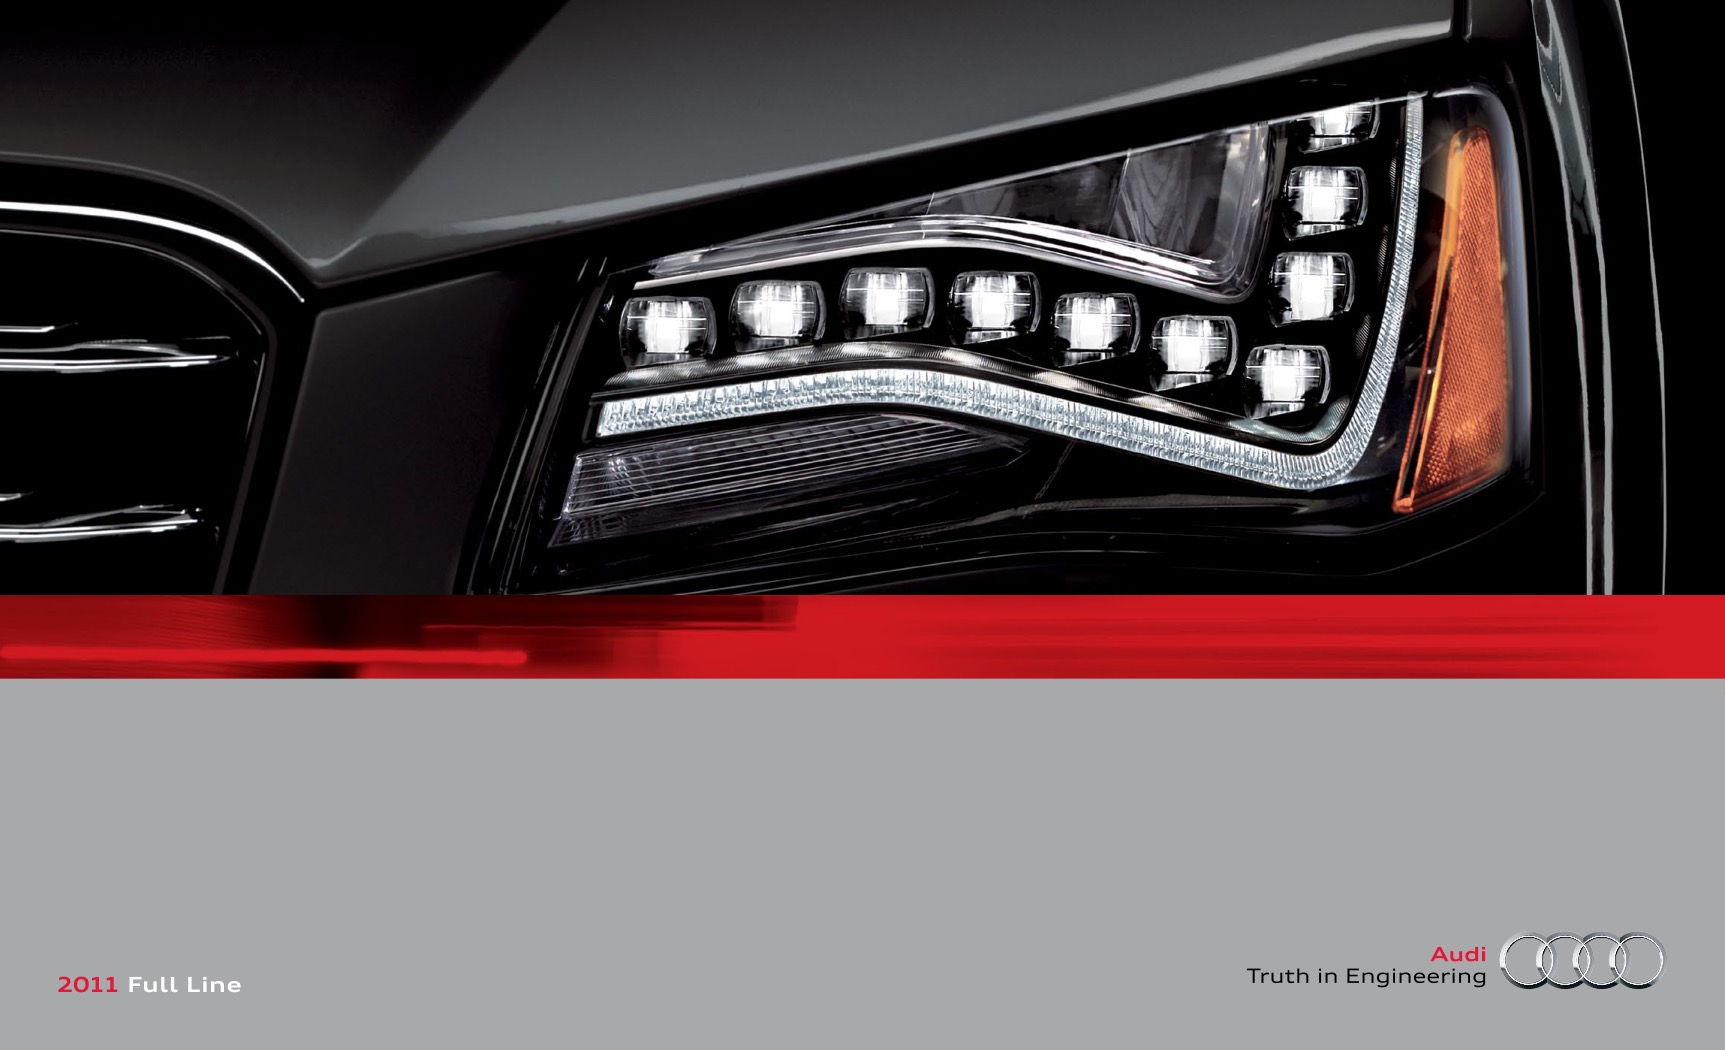 2011 Audi Full Line Brochure